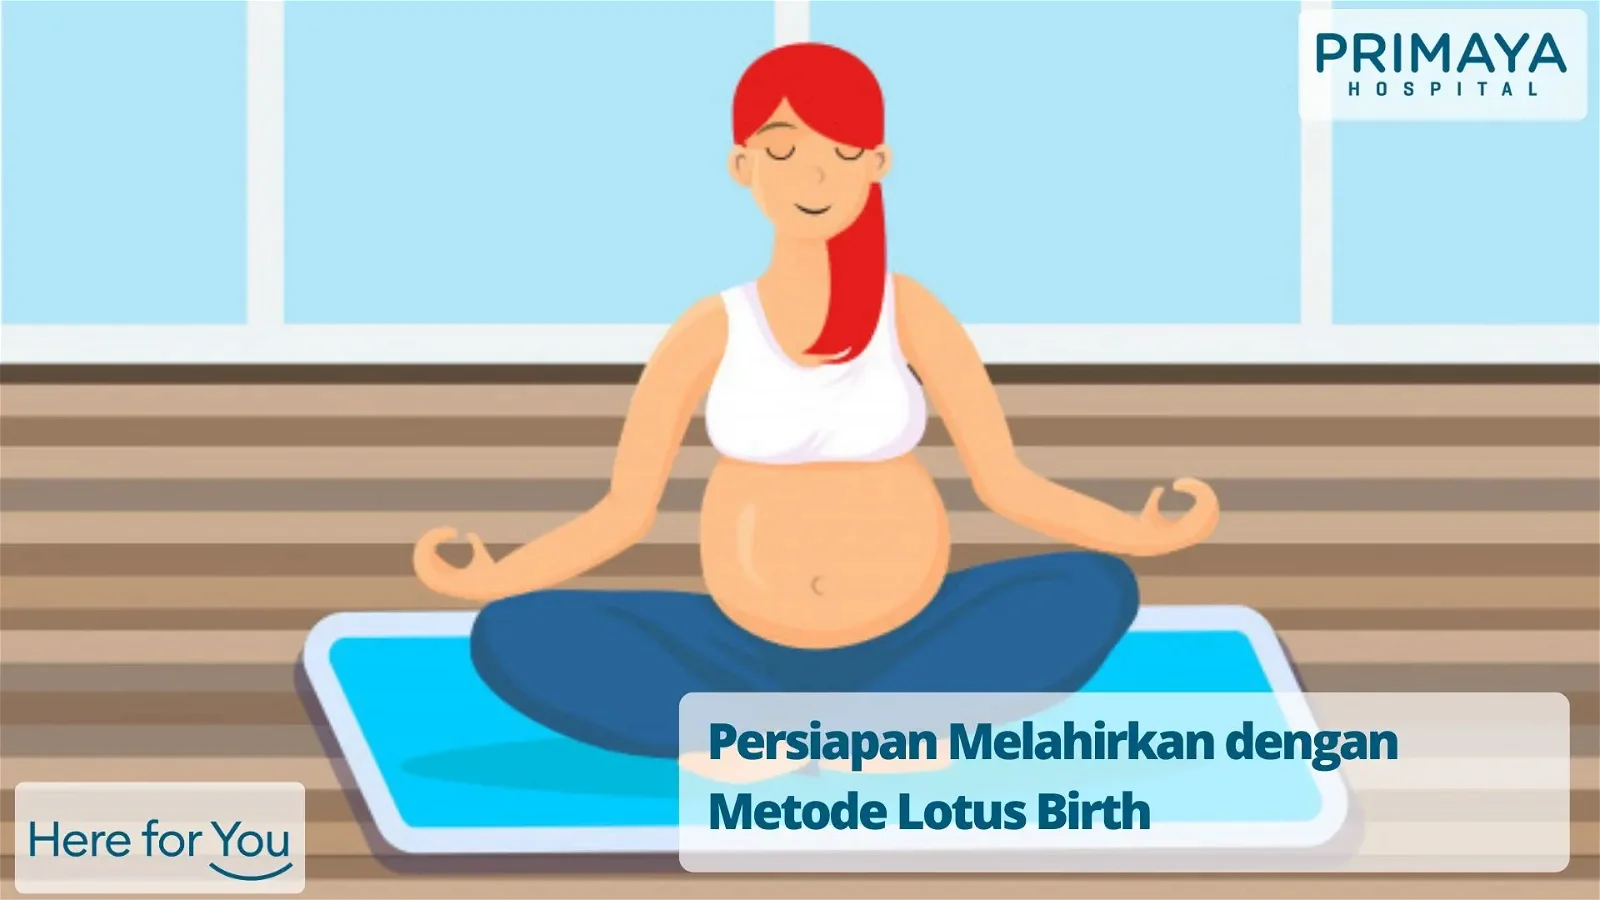 Persiapan Melahirkan dengan Metode Lotus Birth